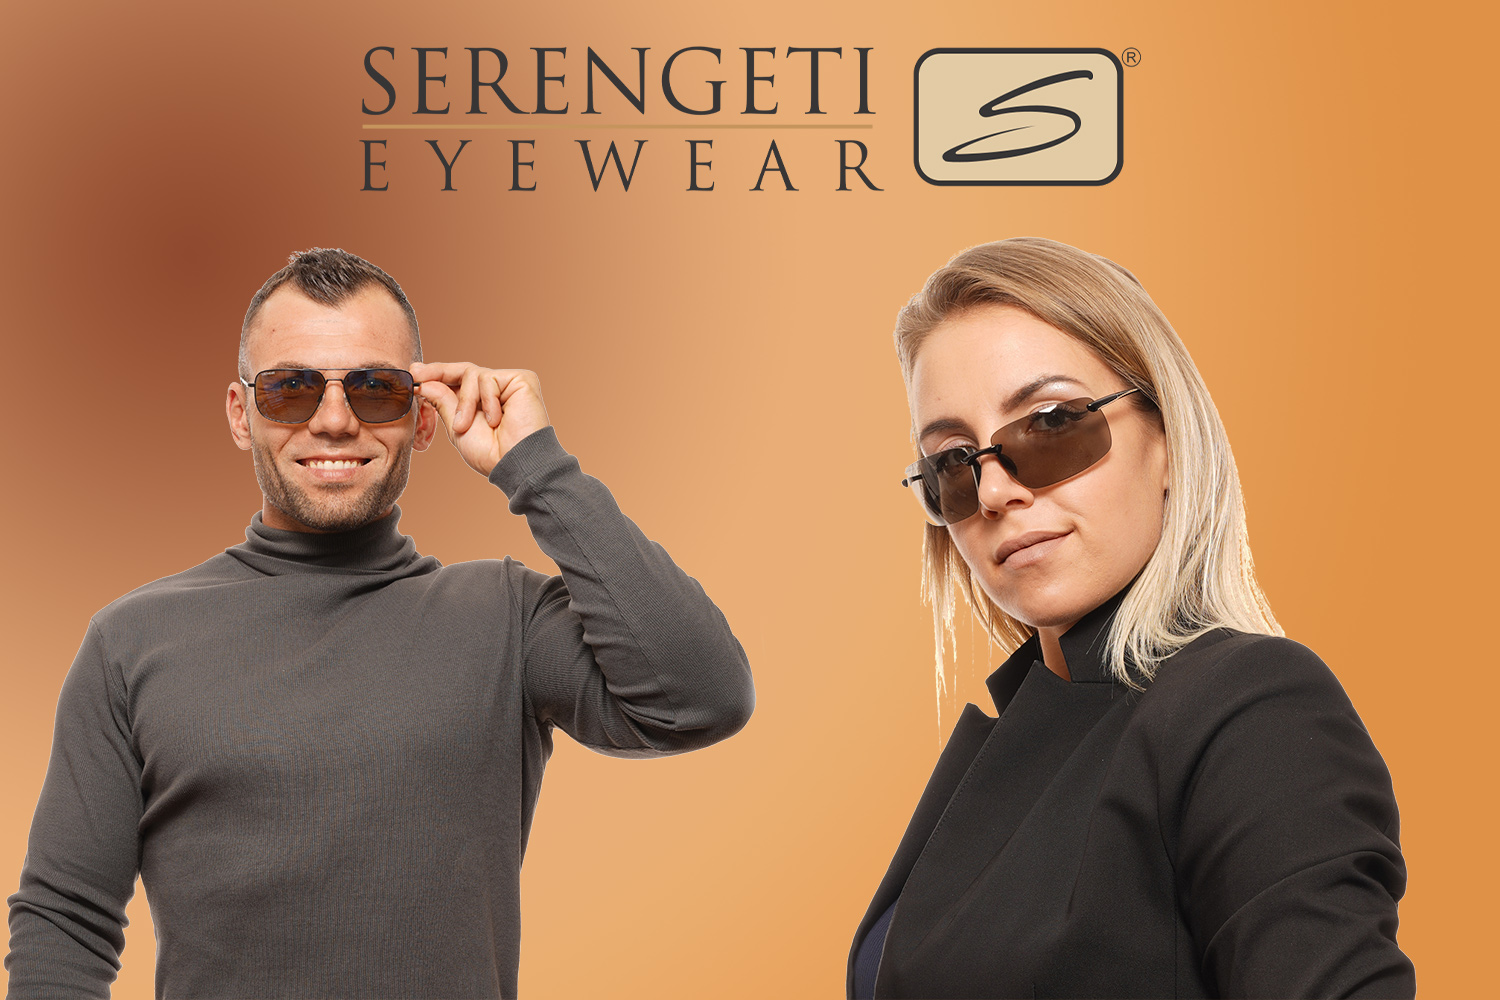 Serengeti eyeware